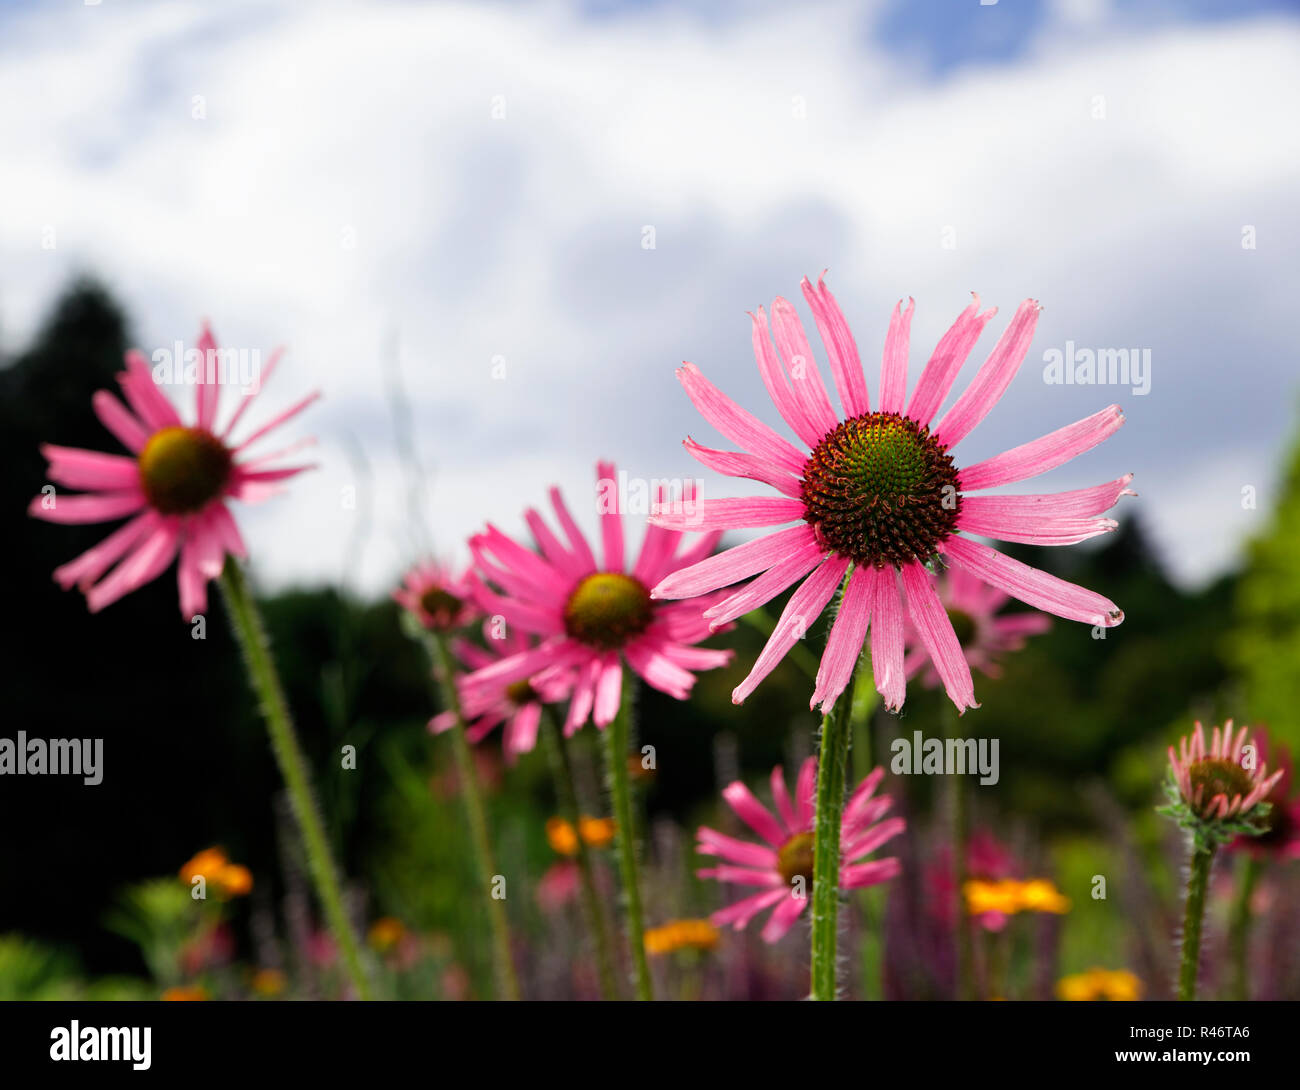 three echinacea flowers Stock Photo